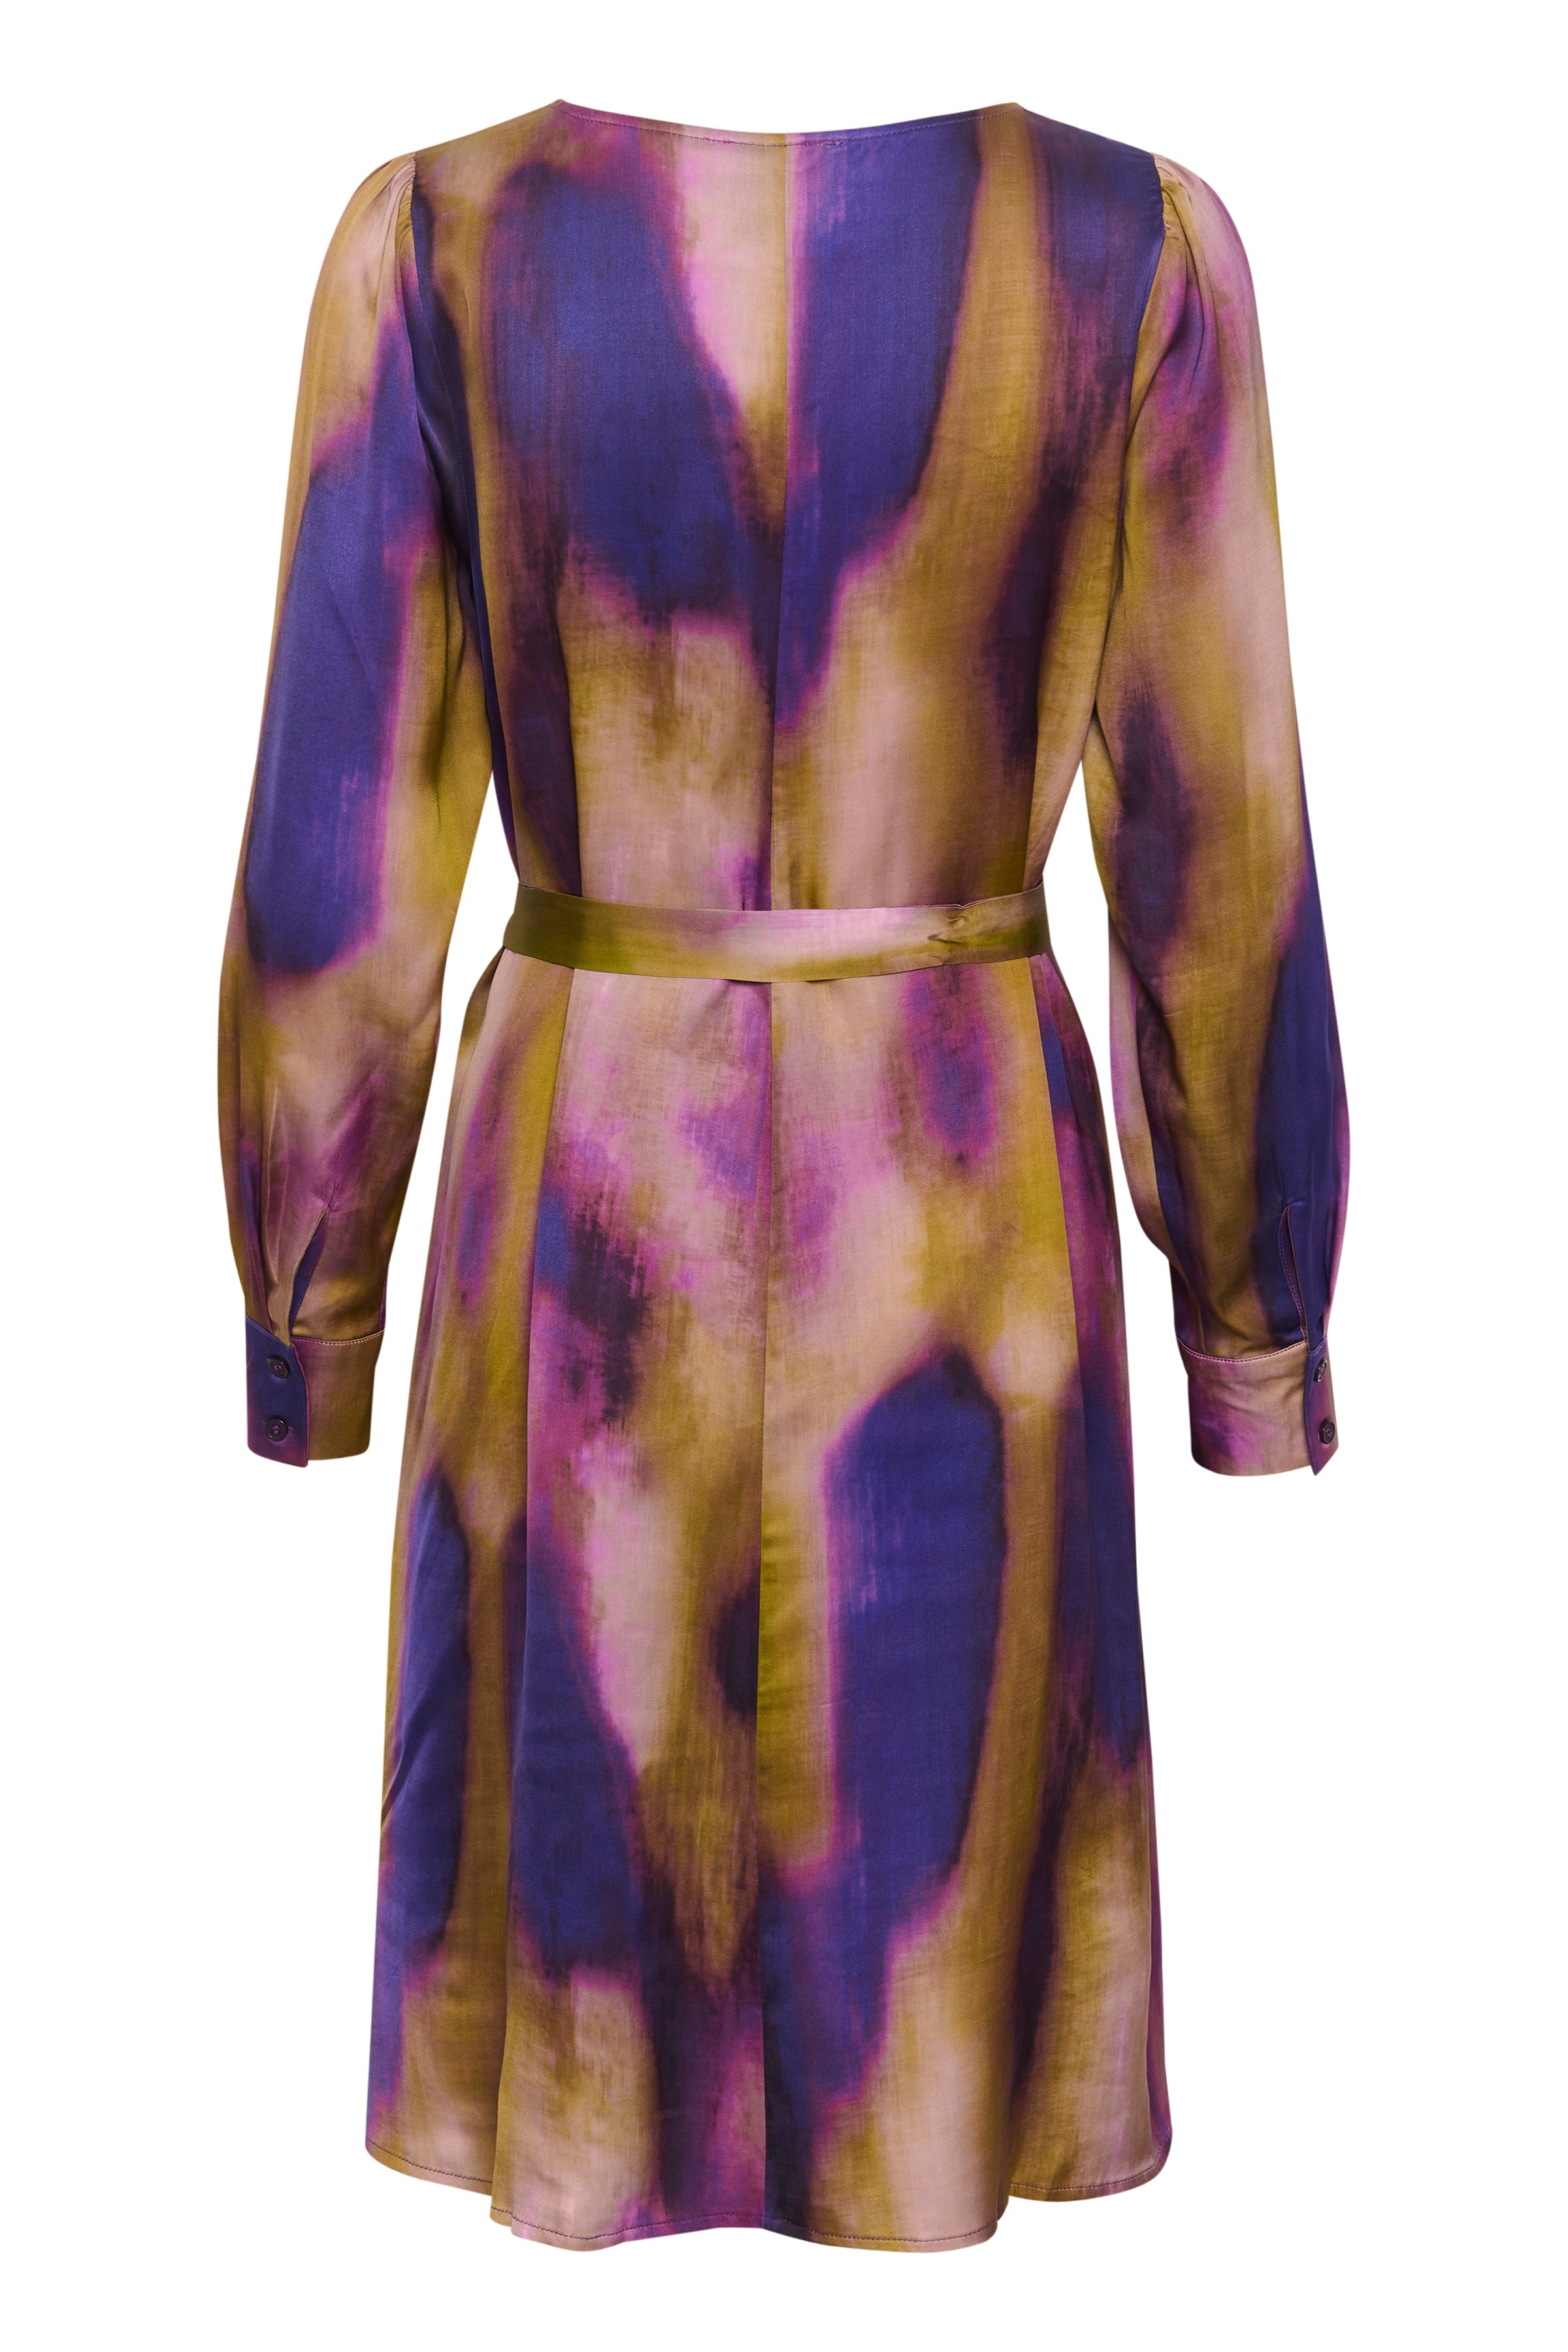 TamaraMW Dress, Purple